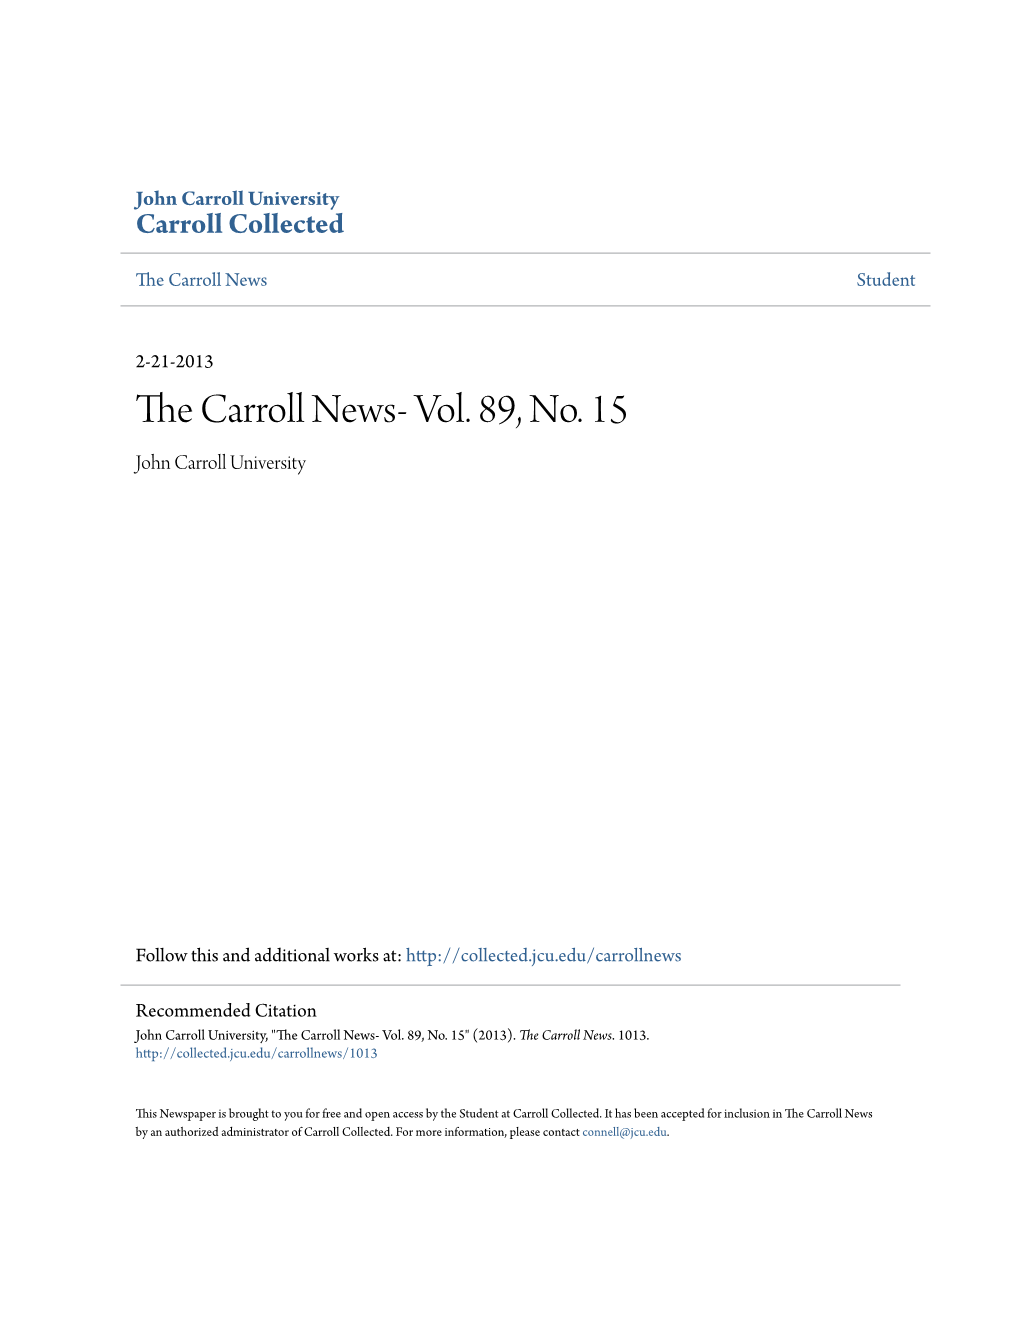 The Carroll News- Vol. 89, No. 15